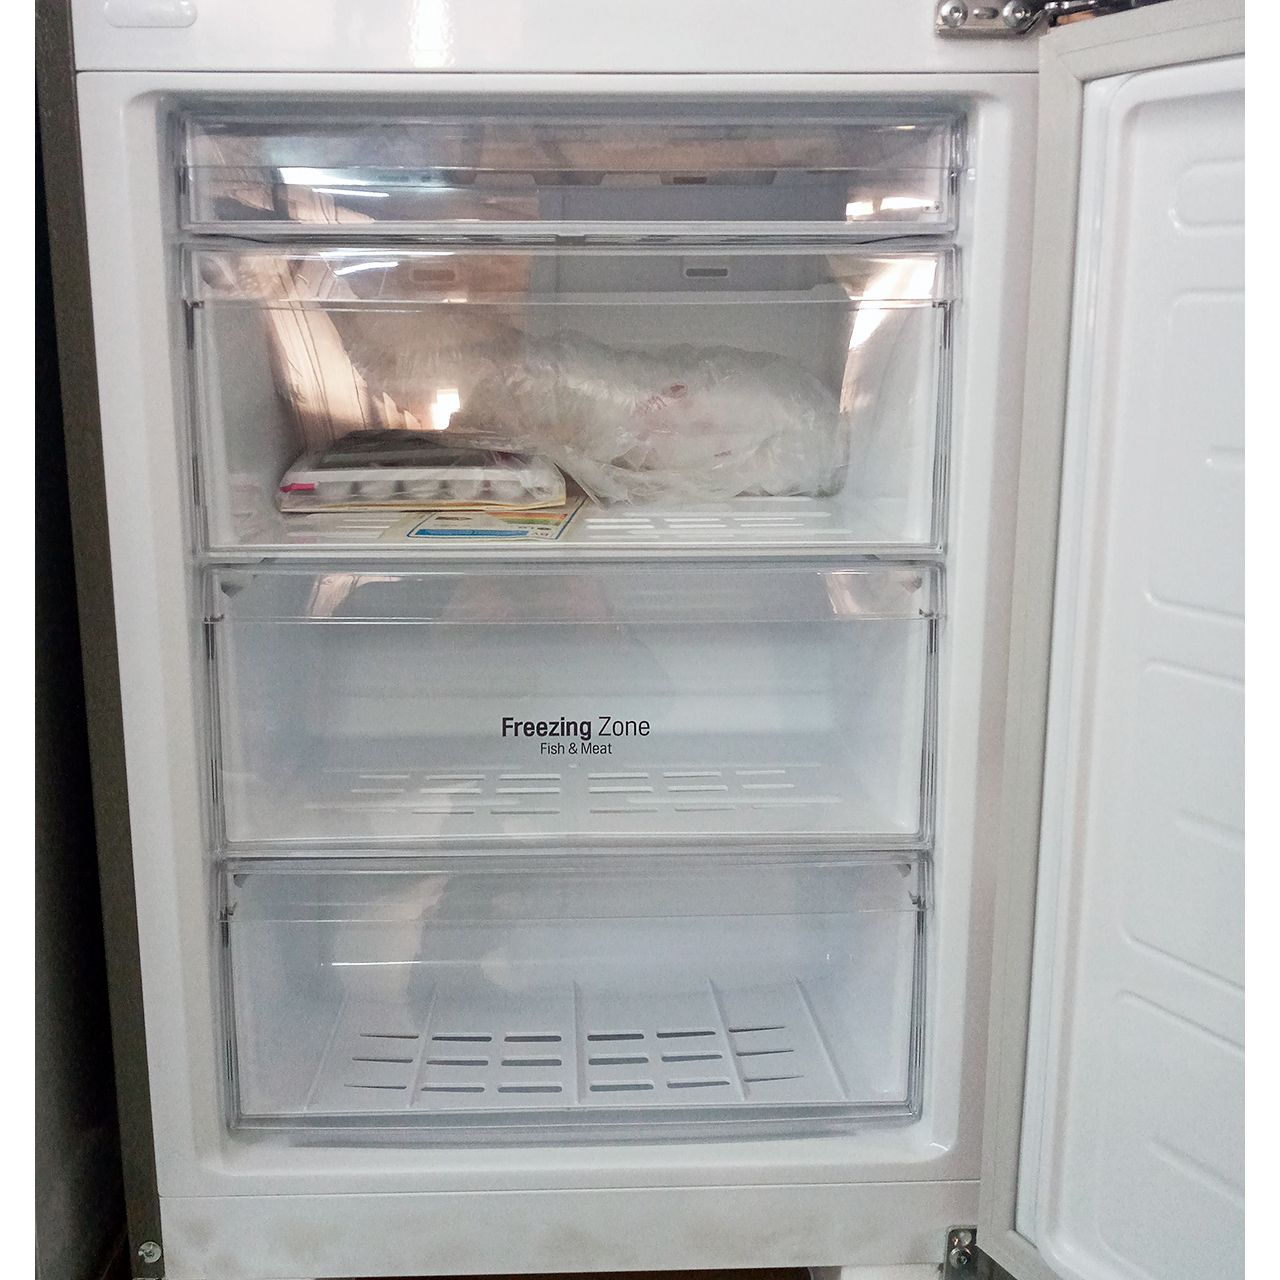 Холодильник двухкамерный LG 302 литра